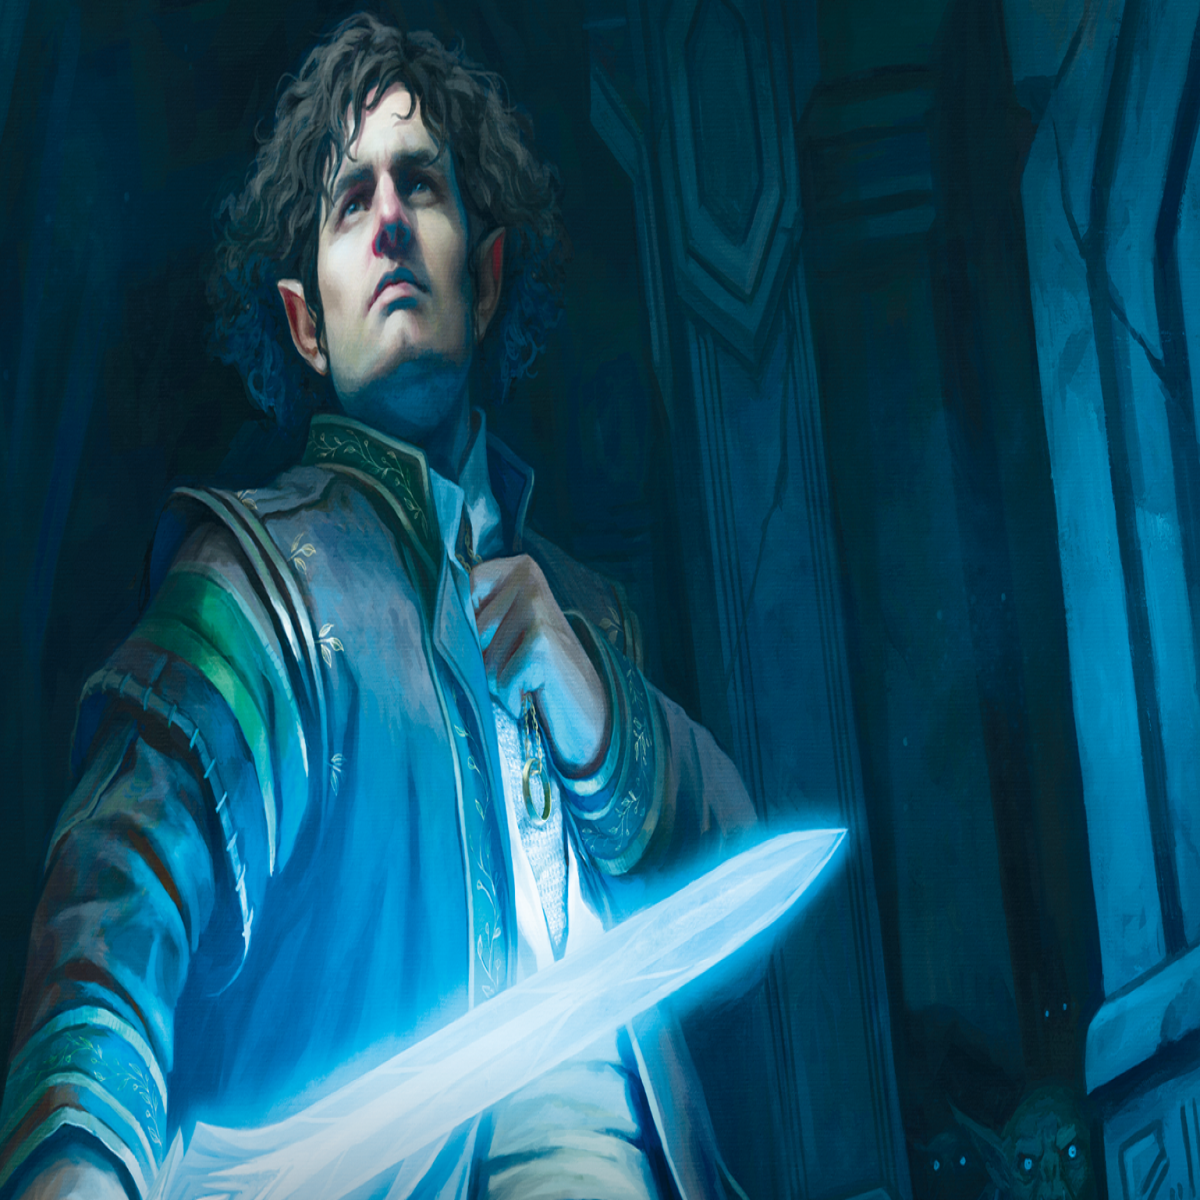 Blue Wizards - Tolkien Gateway